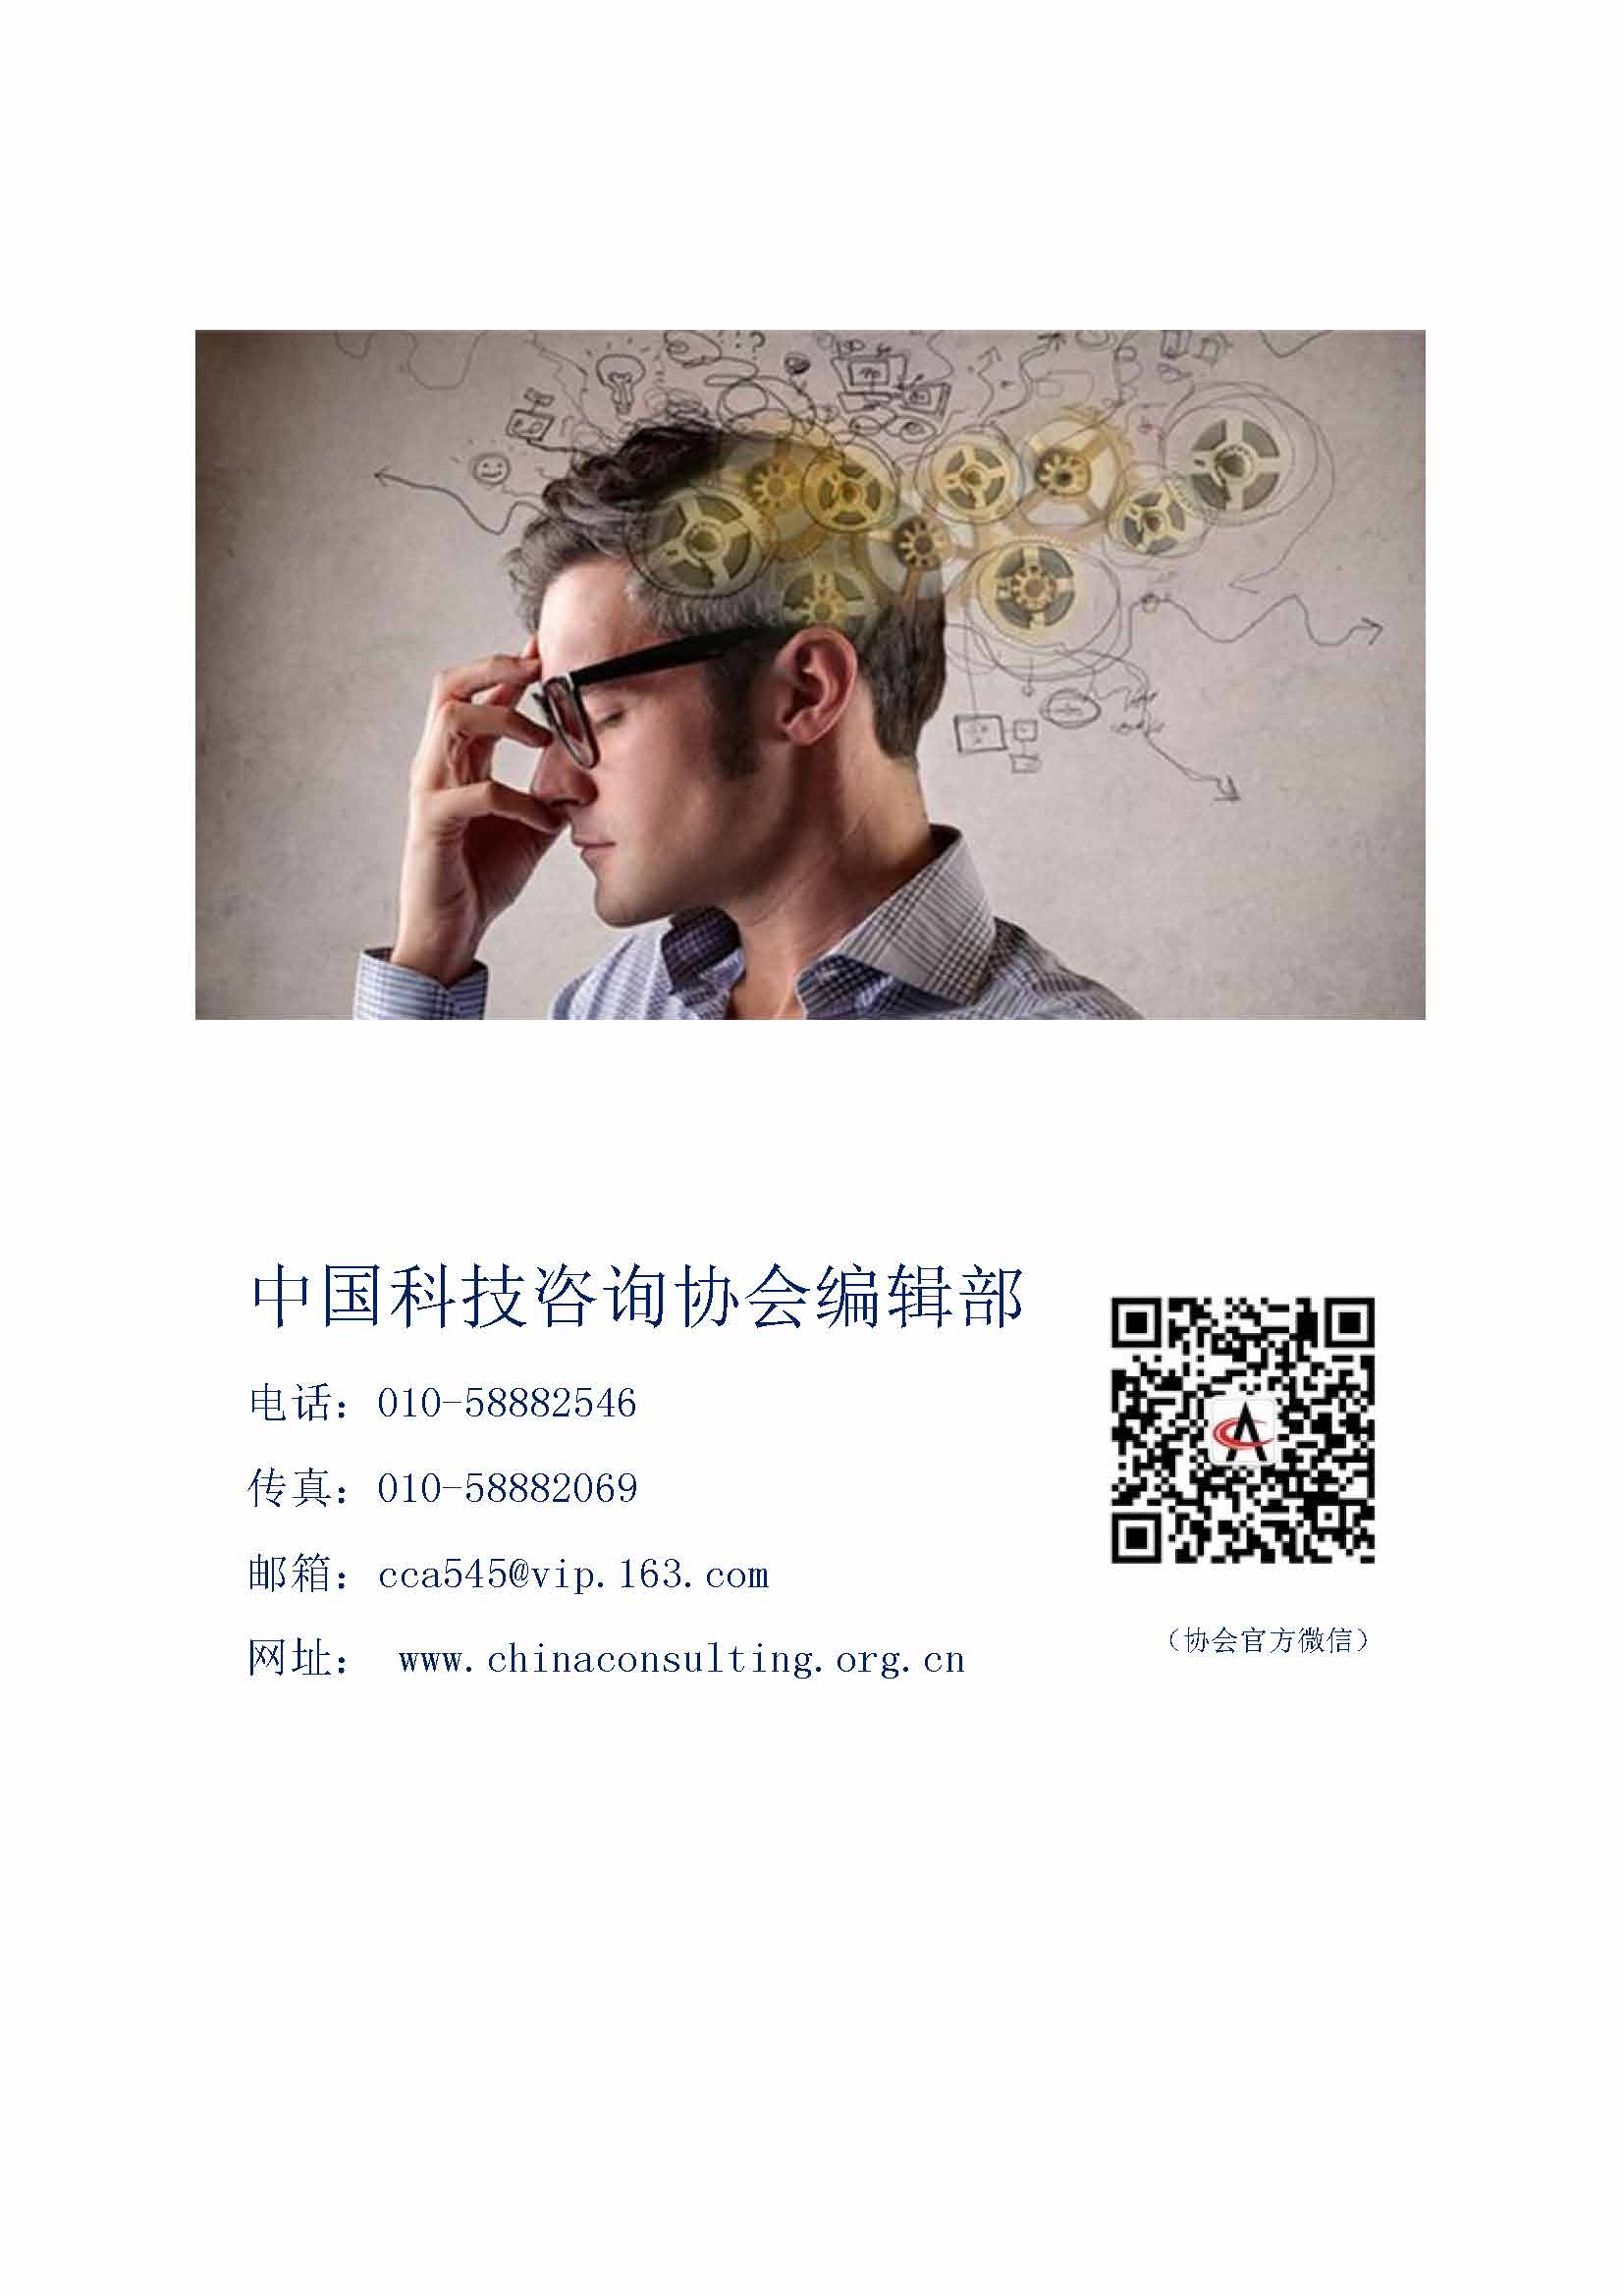 中国科技咨询协会国际快讯（第二十八期）_页面_10.jpg